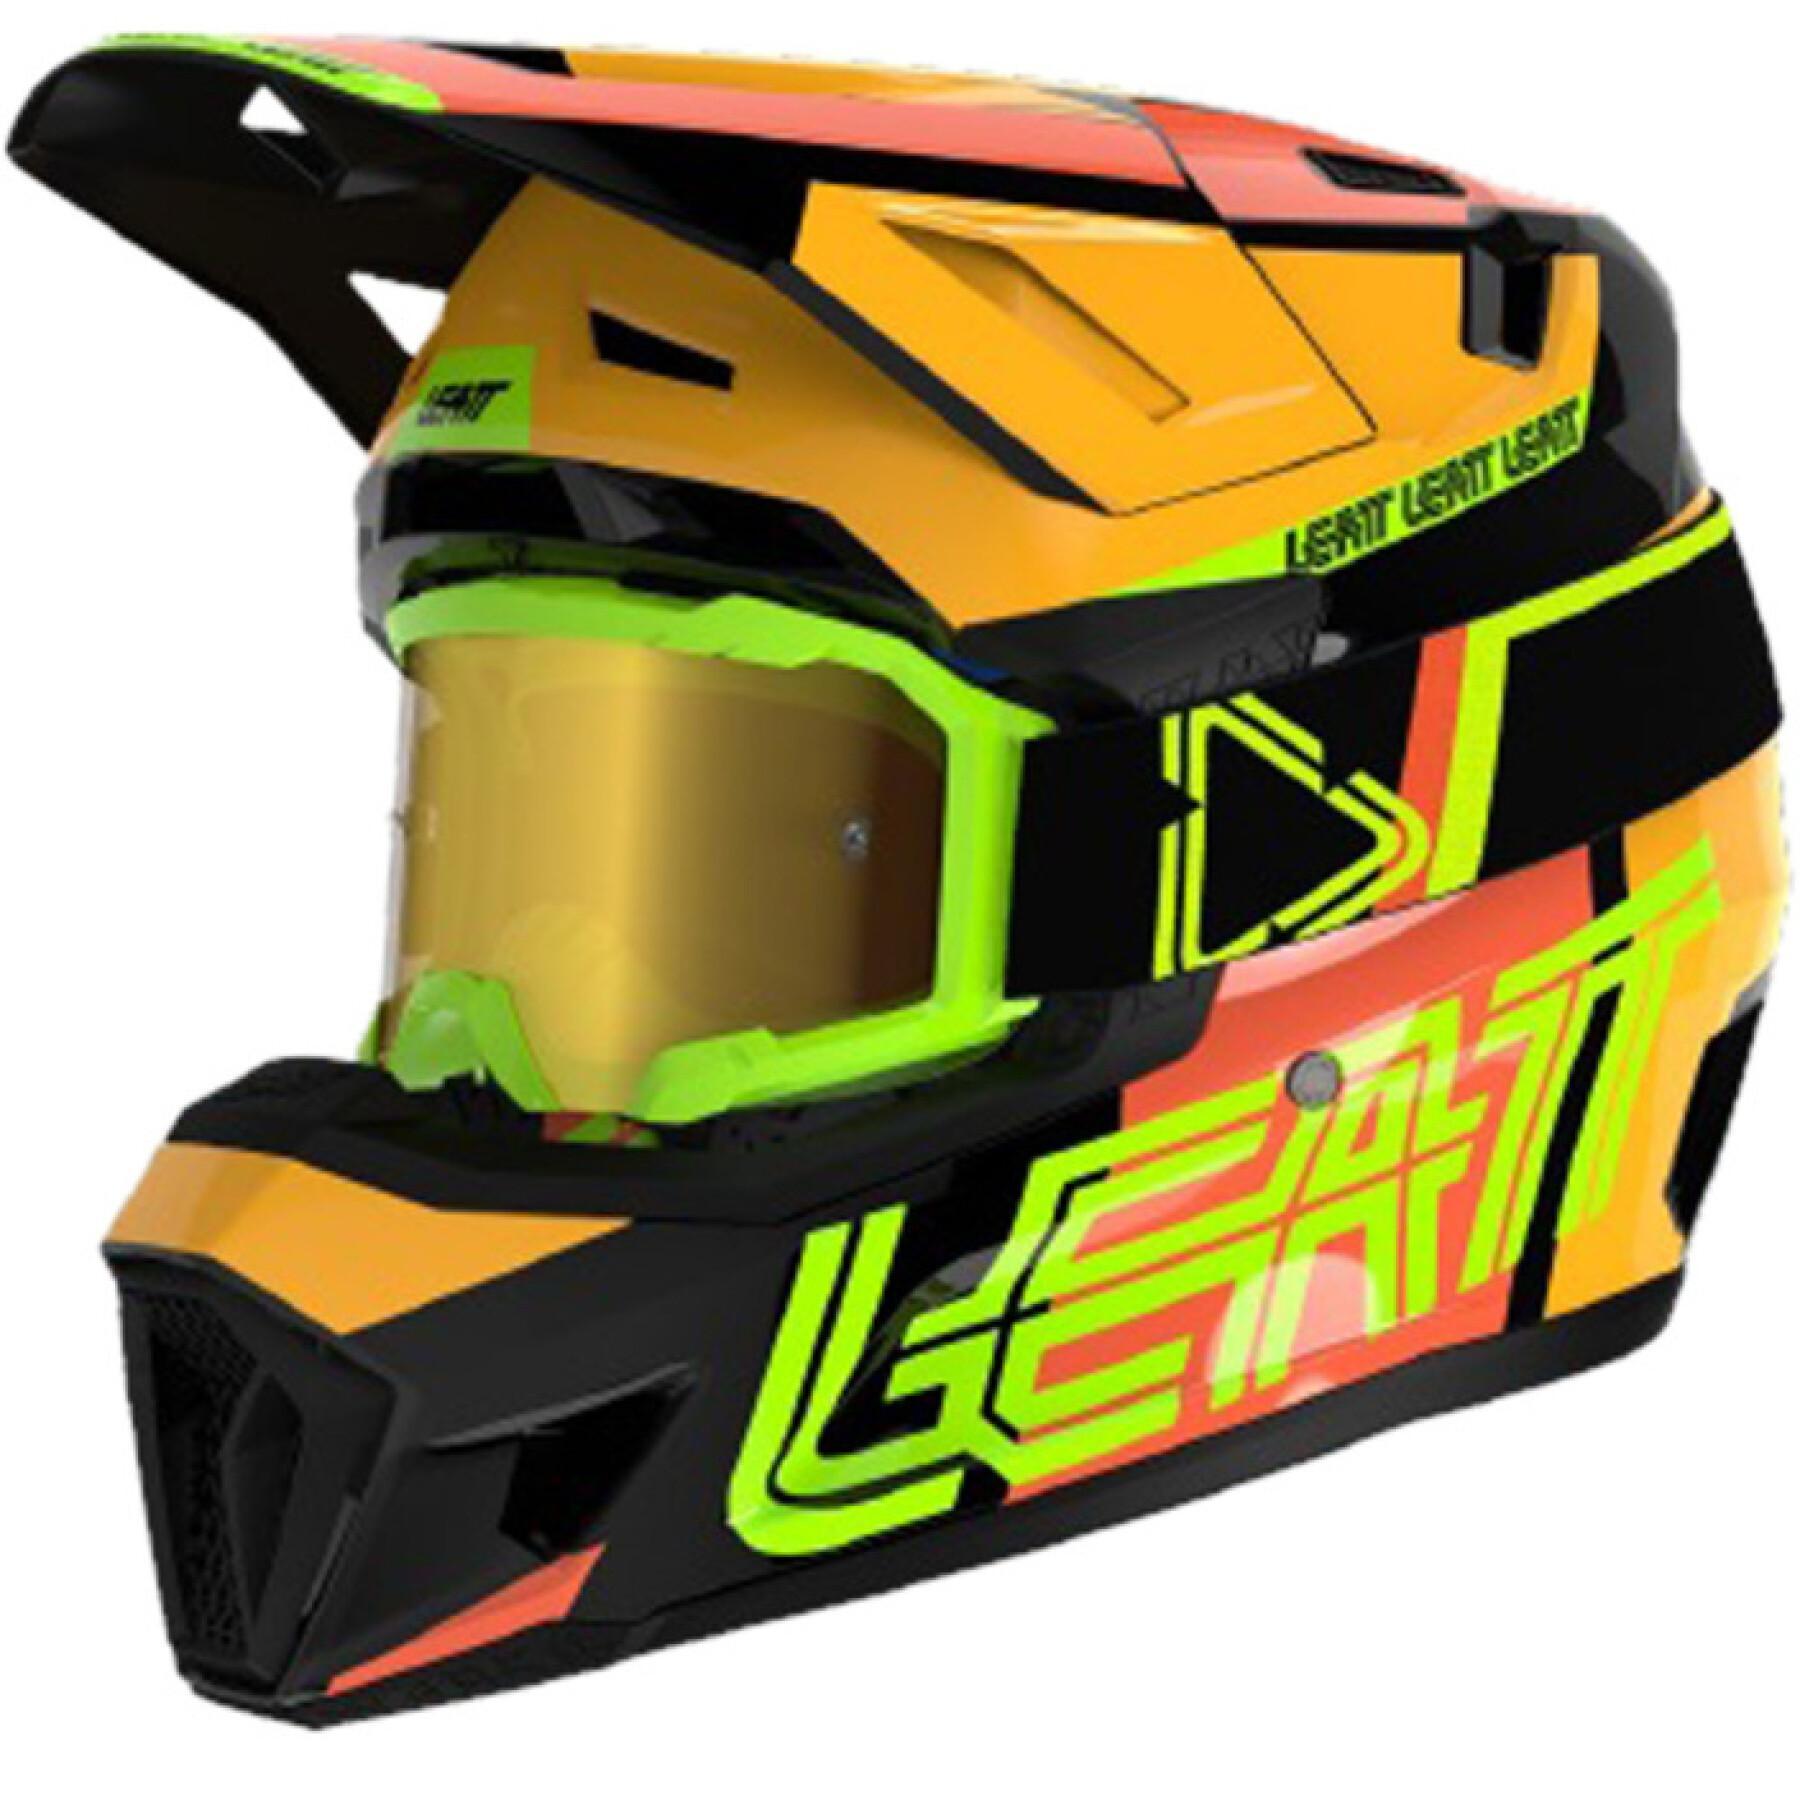 Kit de capacete de motocross Leatt 7.5 V24